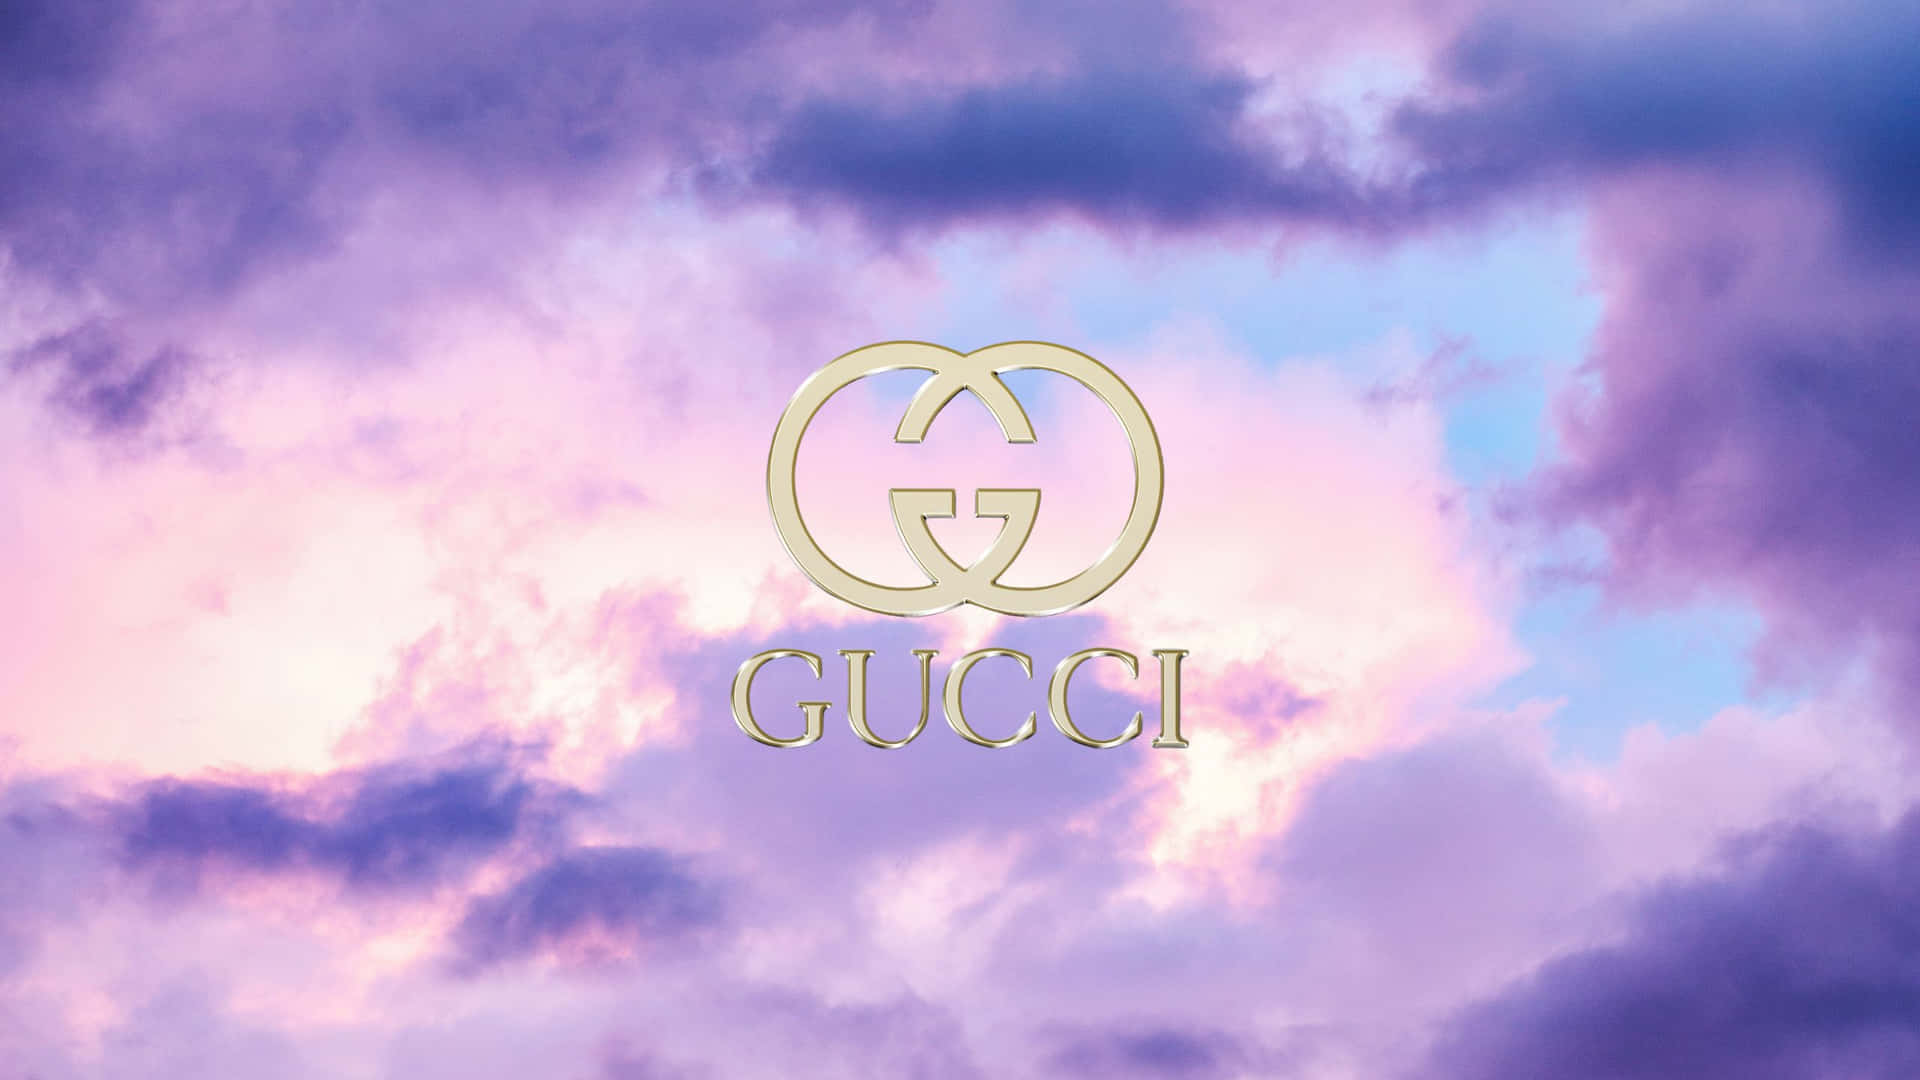 Lilla Gucci 2560 X 1440 Wallpaper